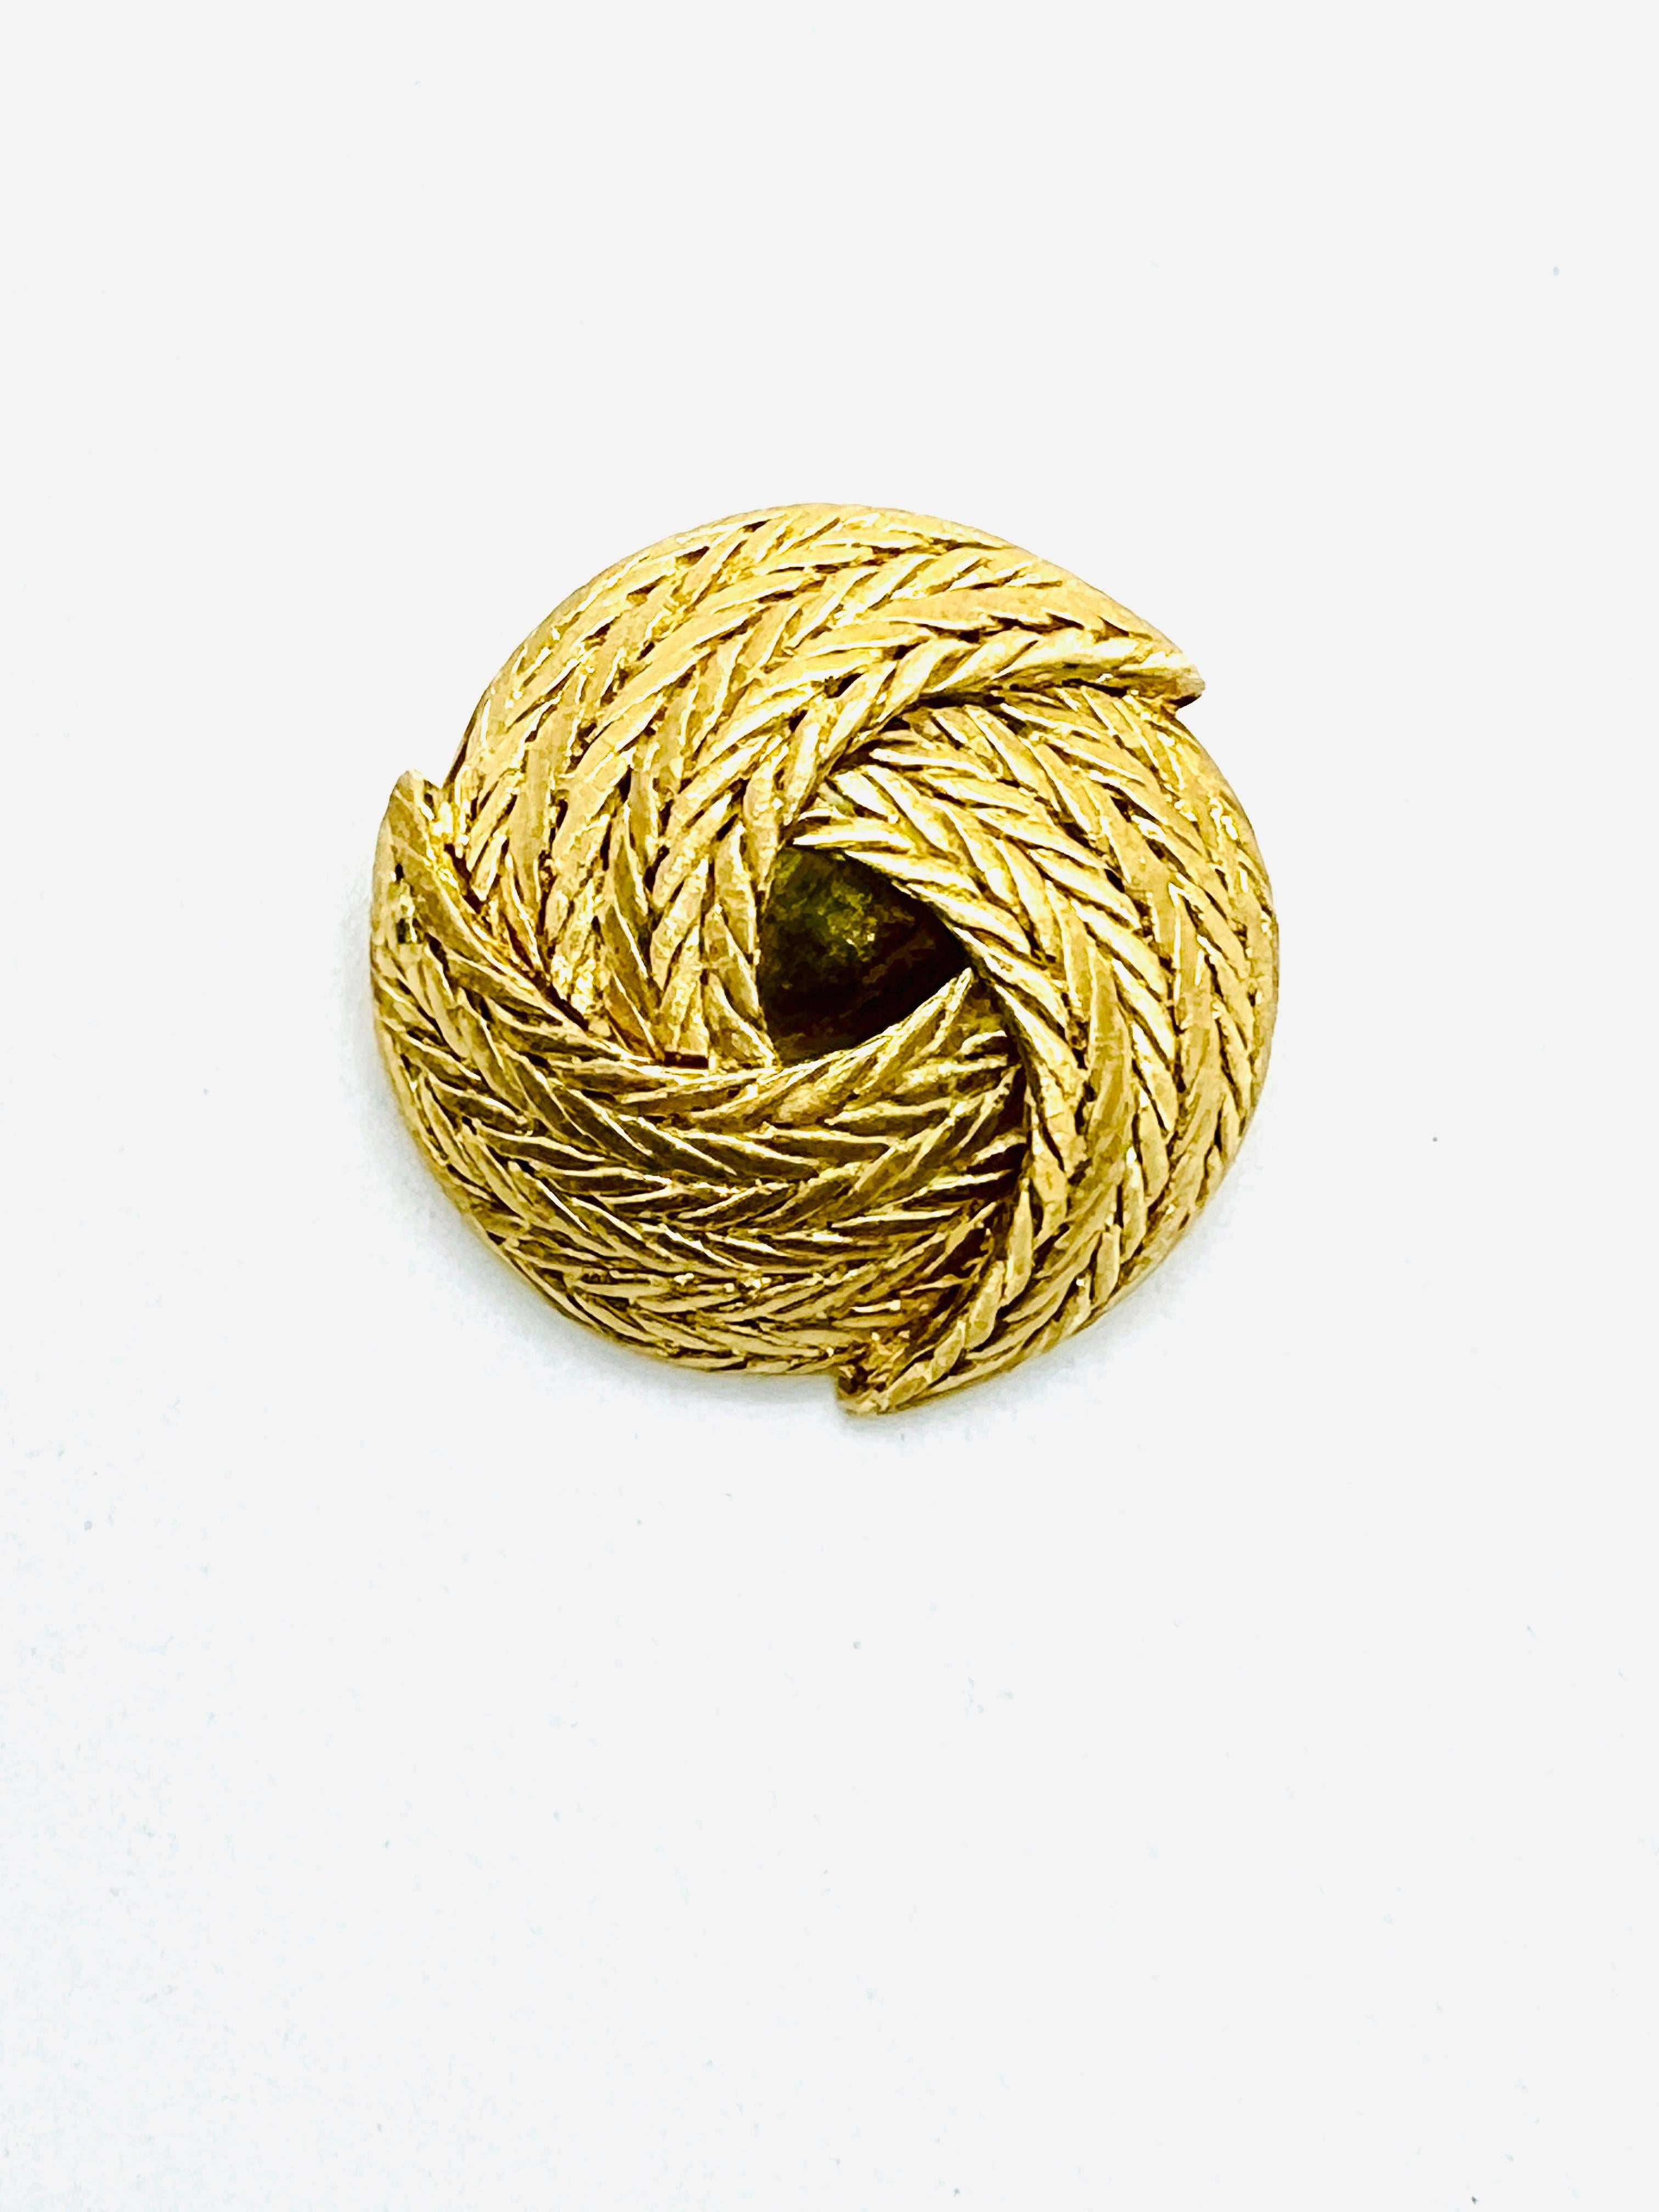 Magnifique broche ronde de Buccellati. Cette pièce est réalisée en or jaune 18 carats. Il présente un magnifique motif de panier tressé en trois sections qui se chevauchent. Il mesure 32 mm de diamètre et pèse 19,4 grammes. Gravé au dos 